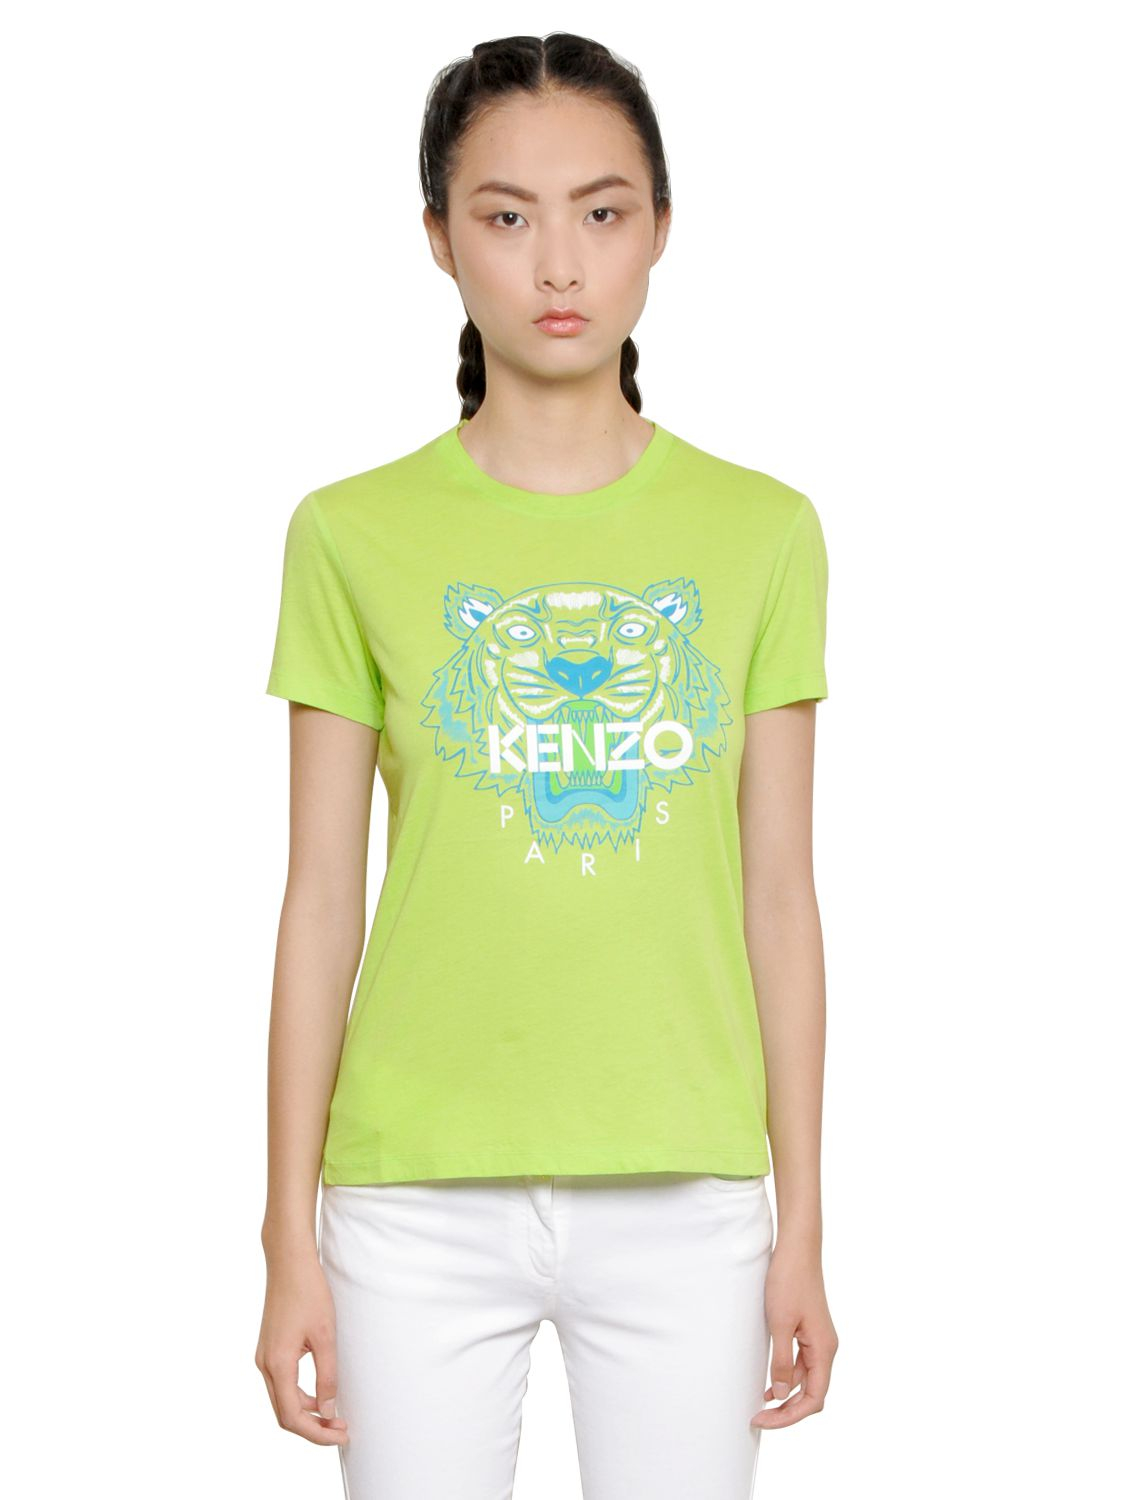 lime green kenzo shirt